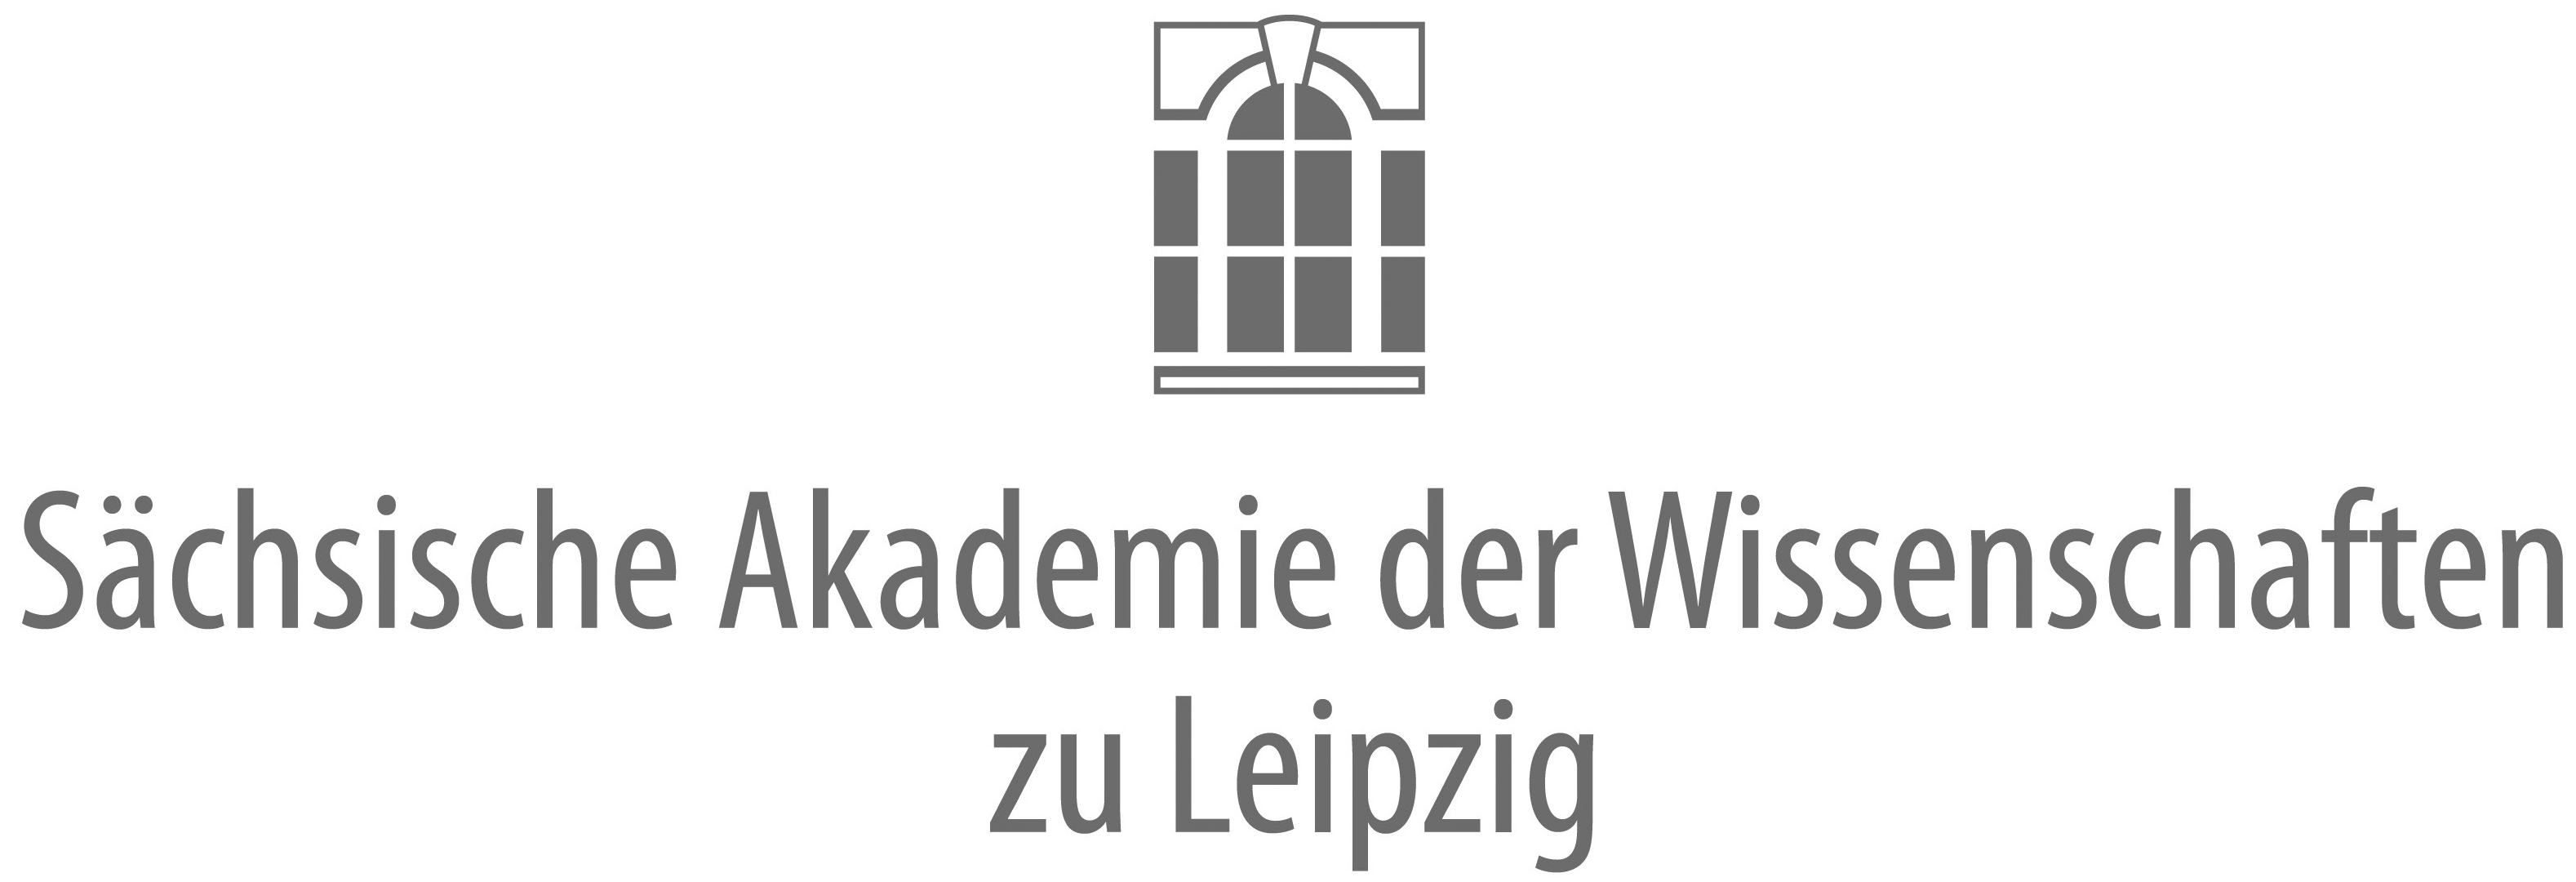 Logo: Sächsische Akademie der Wissenschaften zu Leipzig